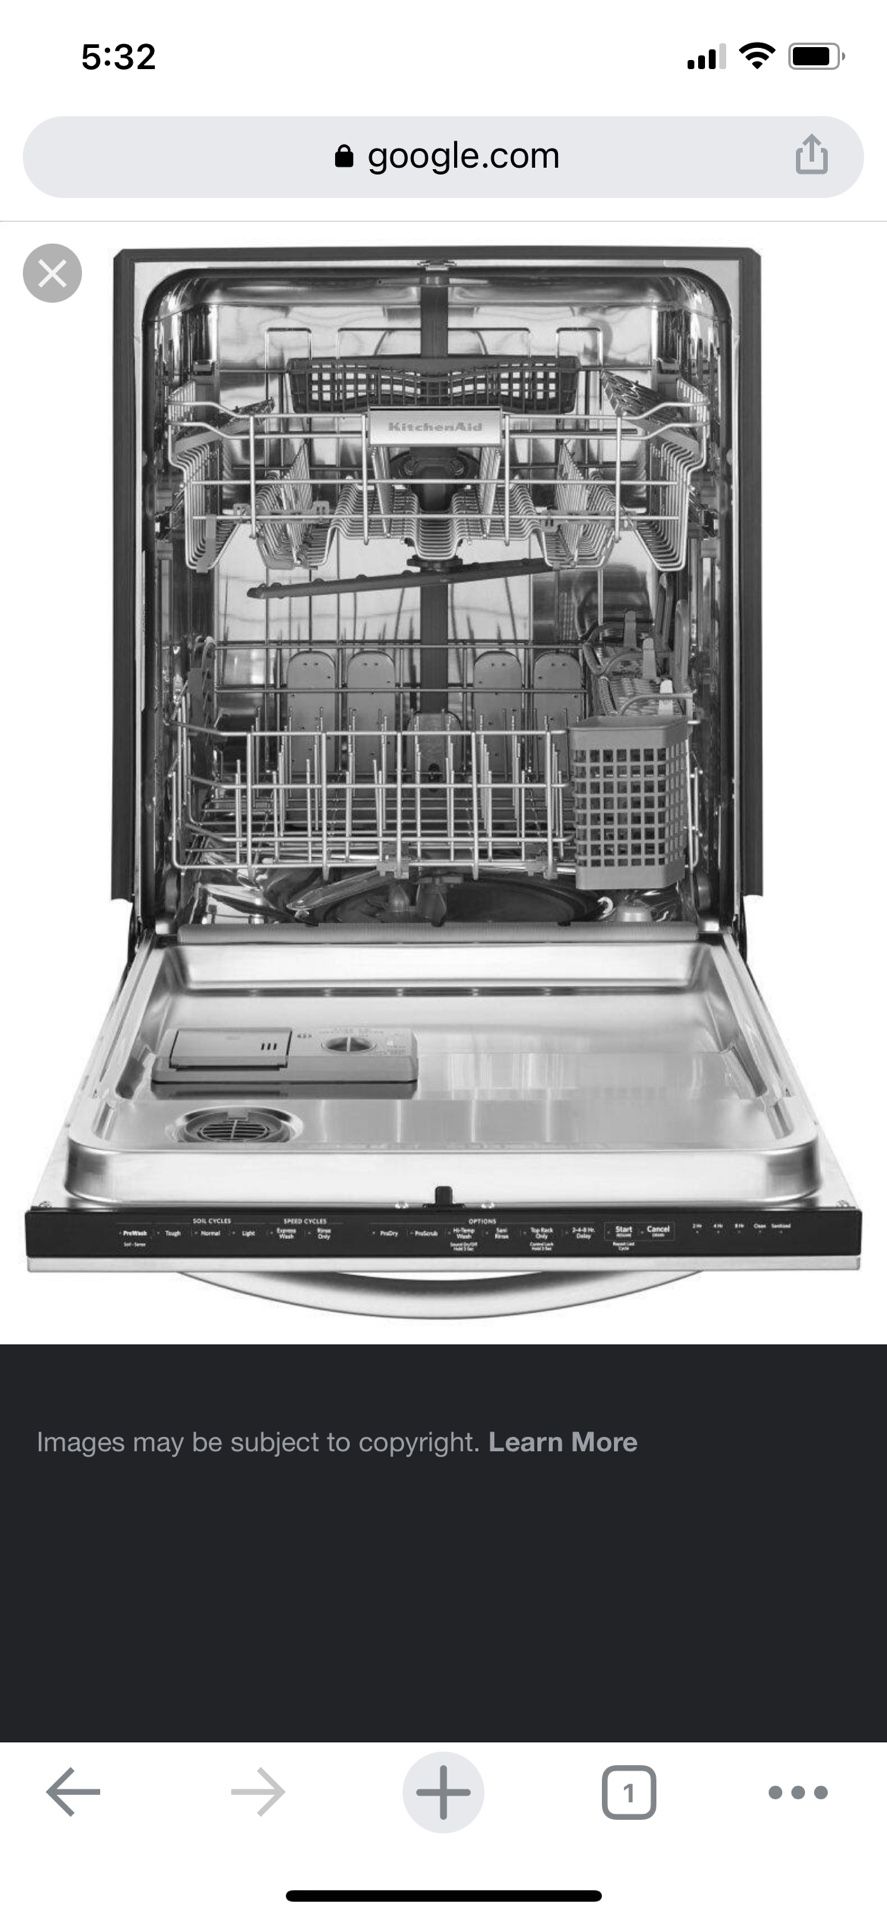 24” KitchenAid Dishwasher - KDTM354DSS